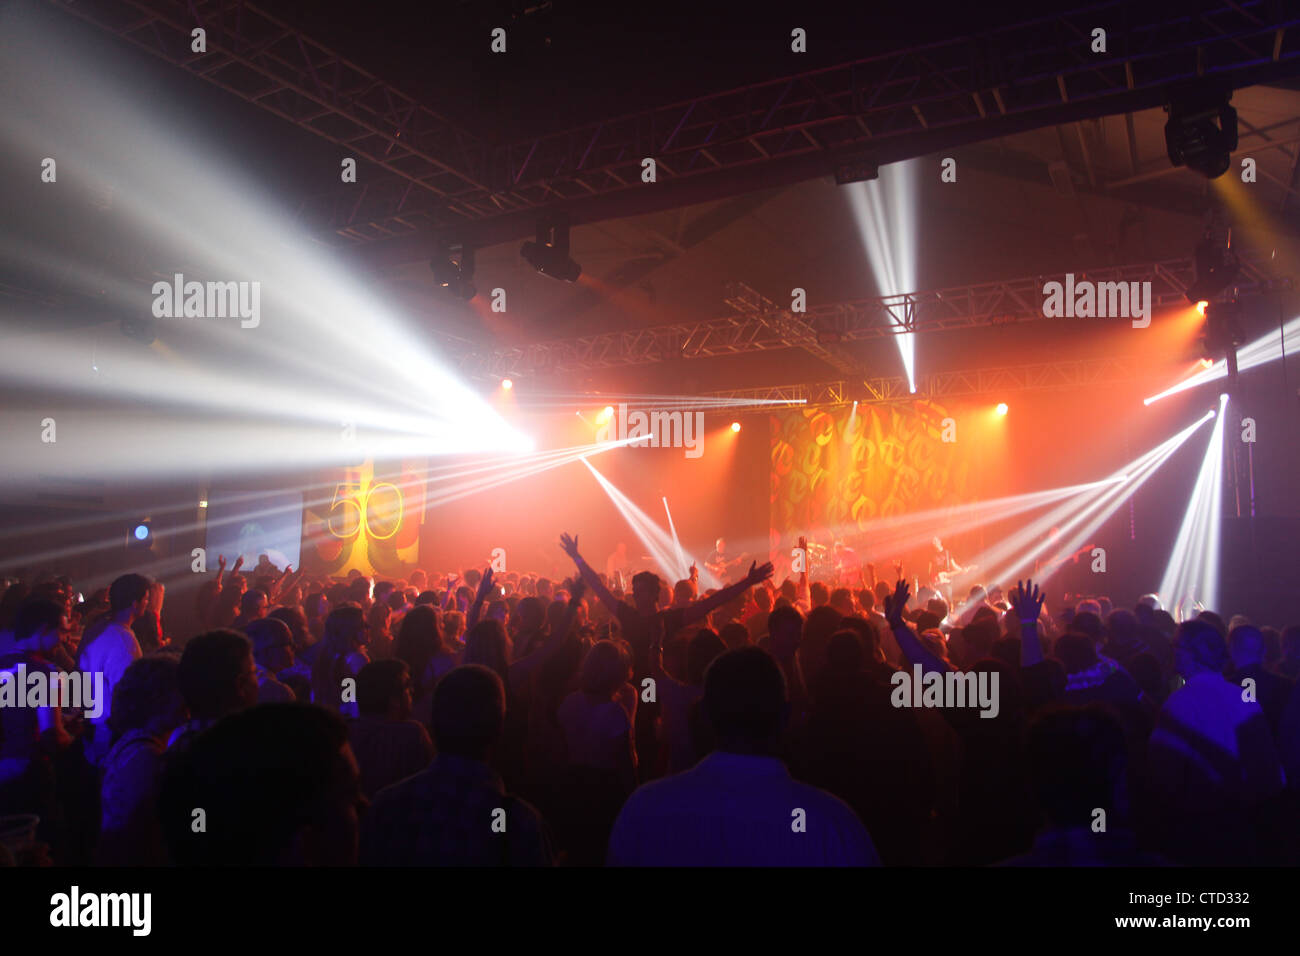 Les concerts Concert Stage lights foule armes en foule l'air shot Banque D'Images